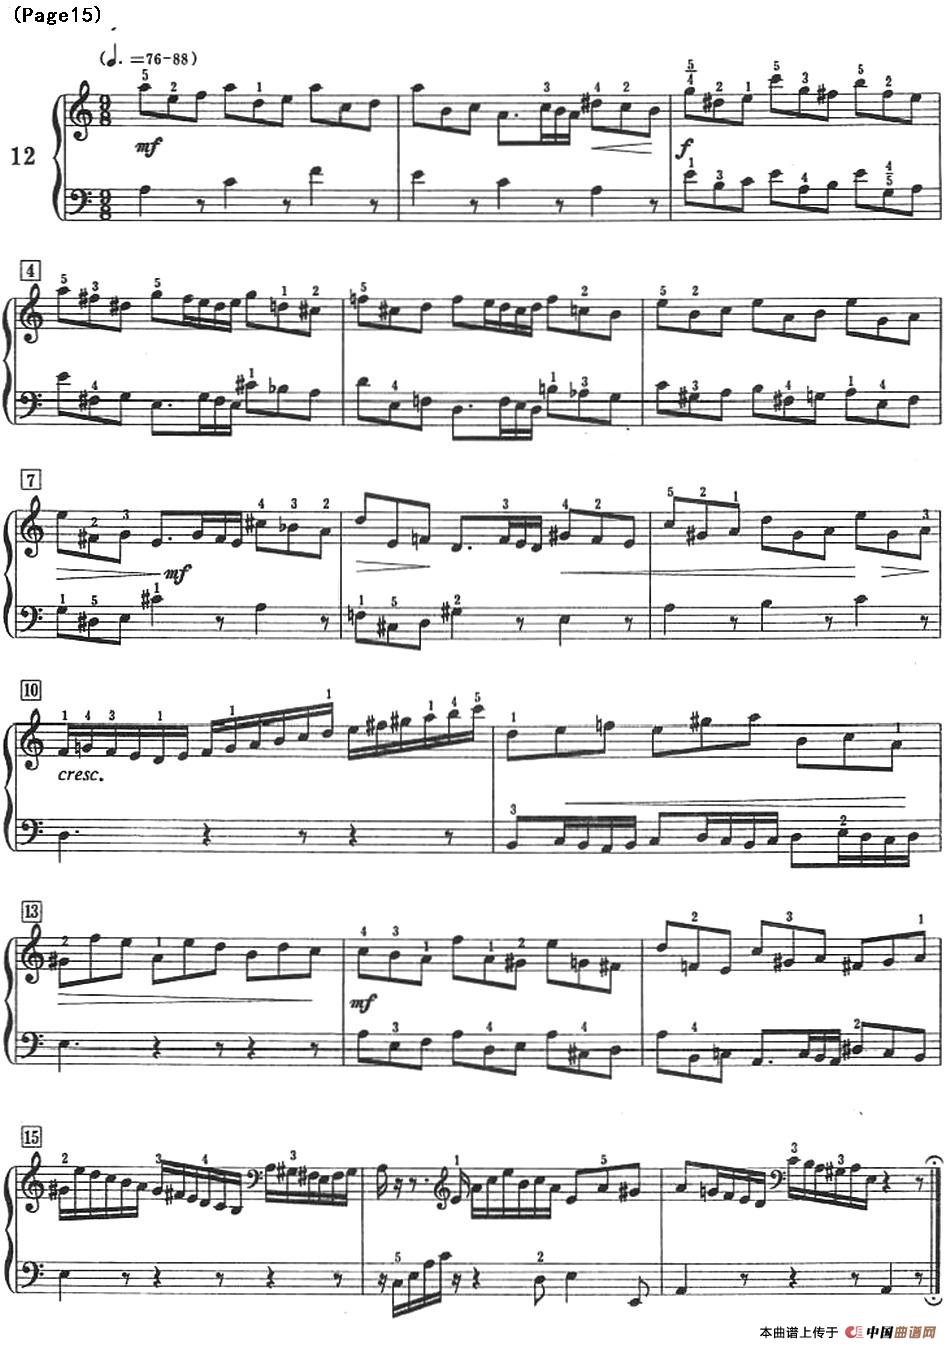 巴赫小前奏曲（NO.9-NO.12）(1)_-Bach Little Prelude and Fugue_页面_20.jpg